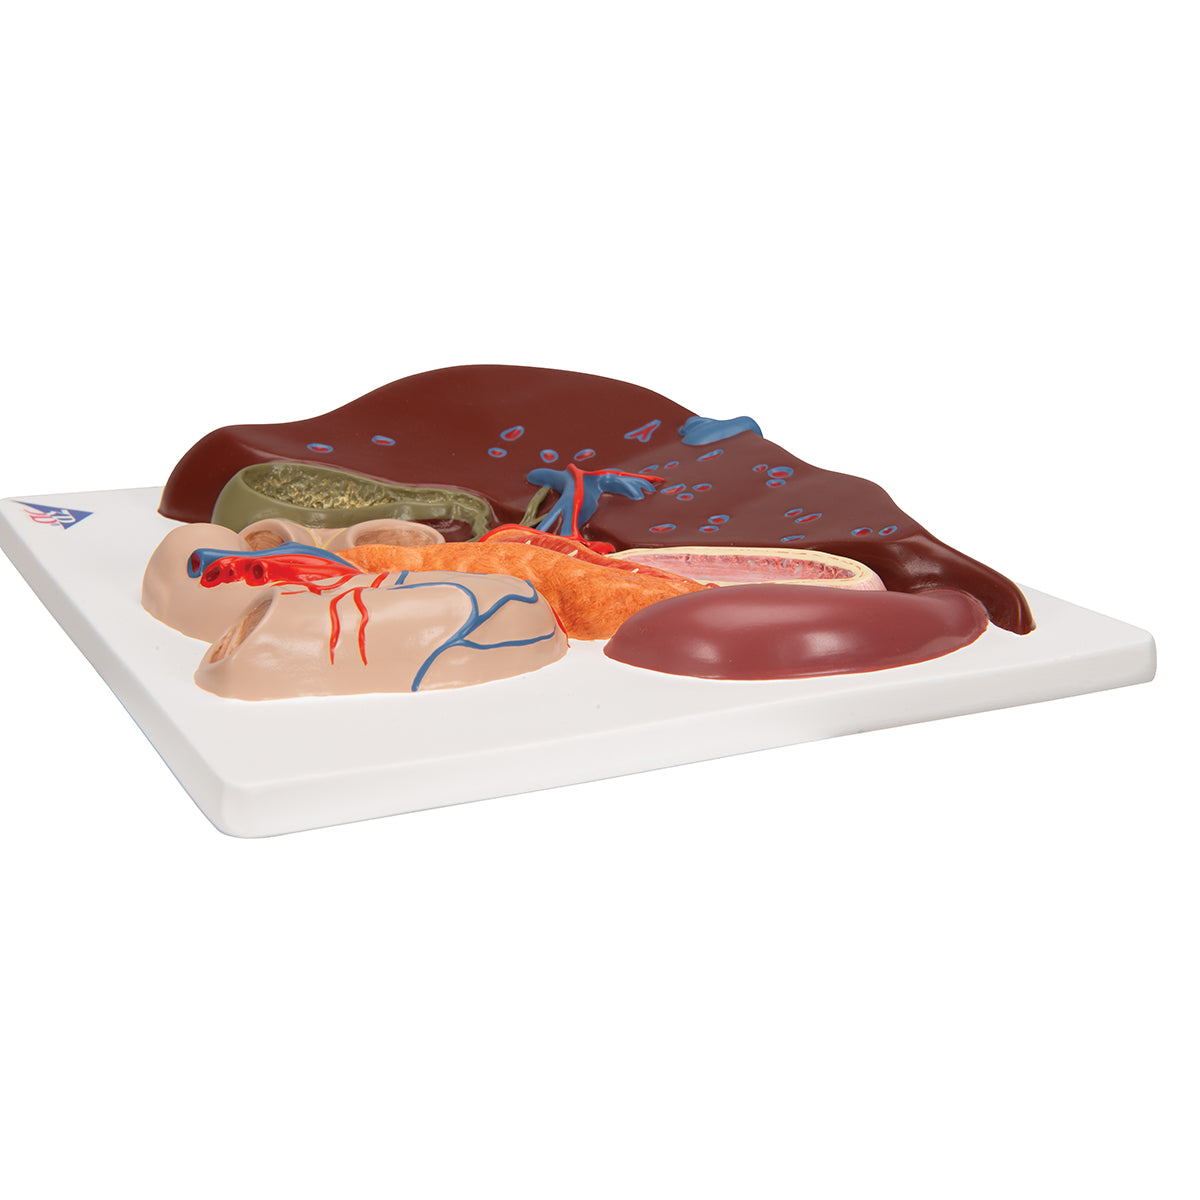 Model af leveren, galdeblæren, galdevejene og relaterede organer